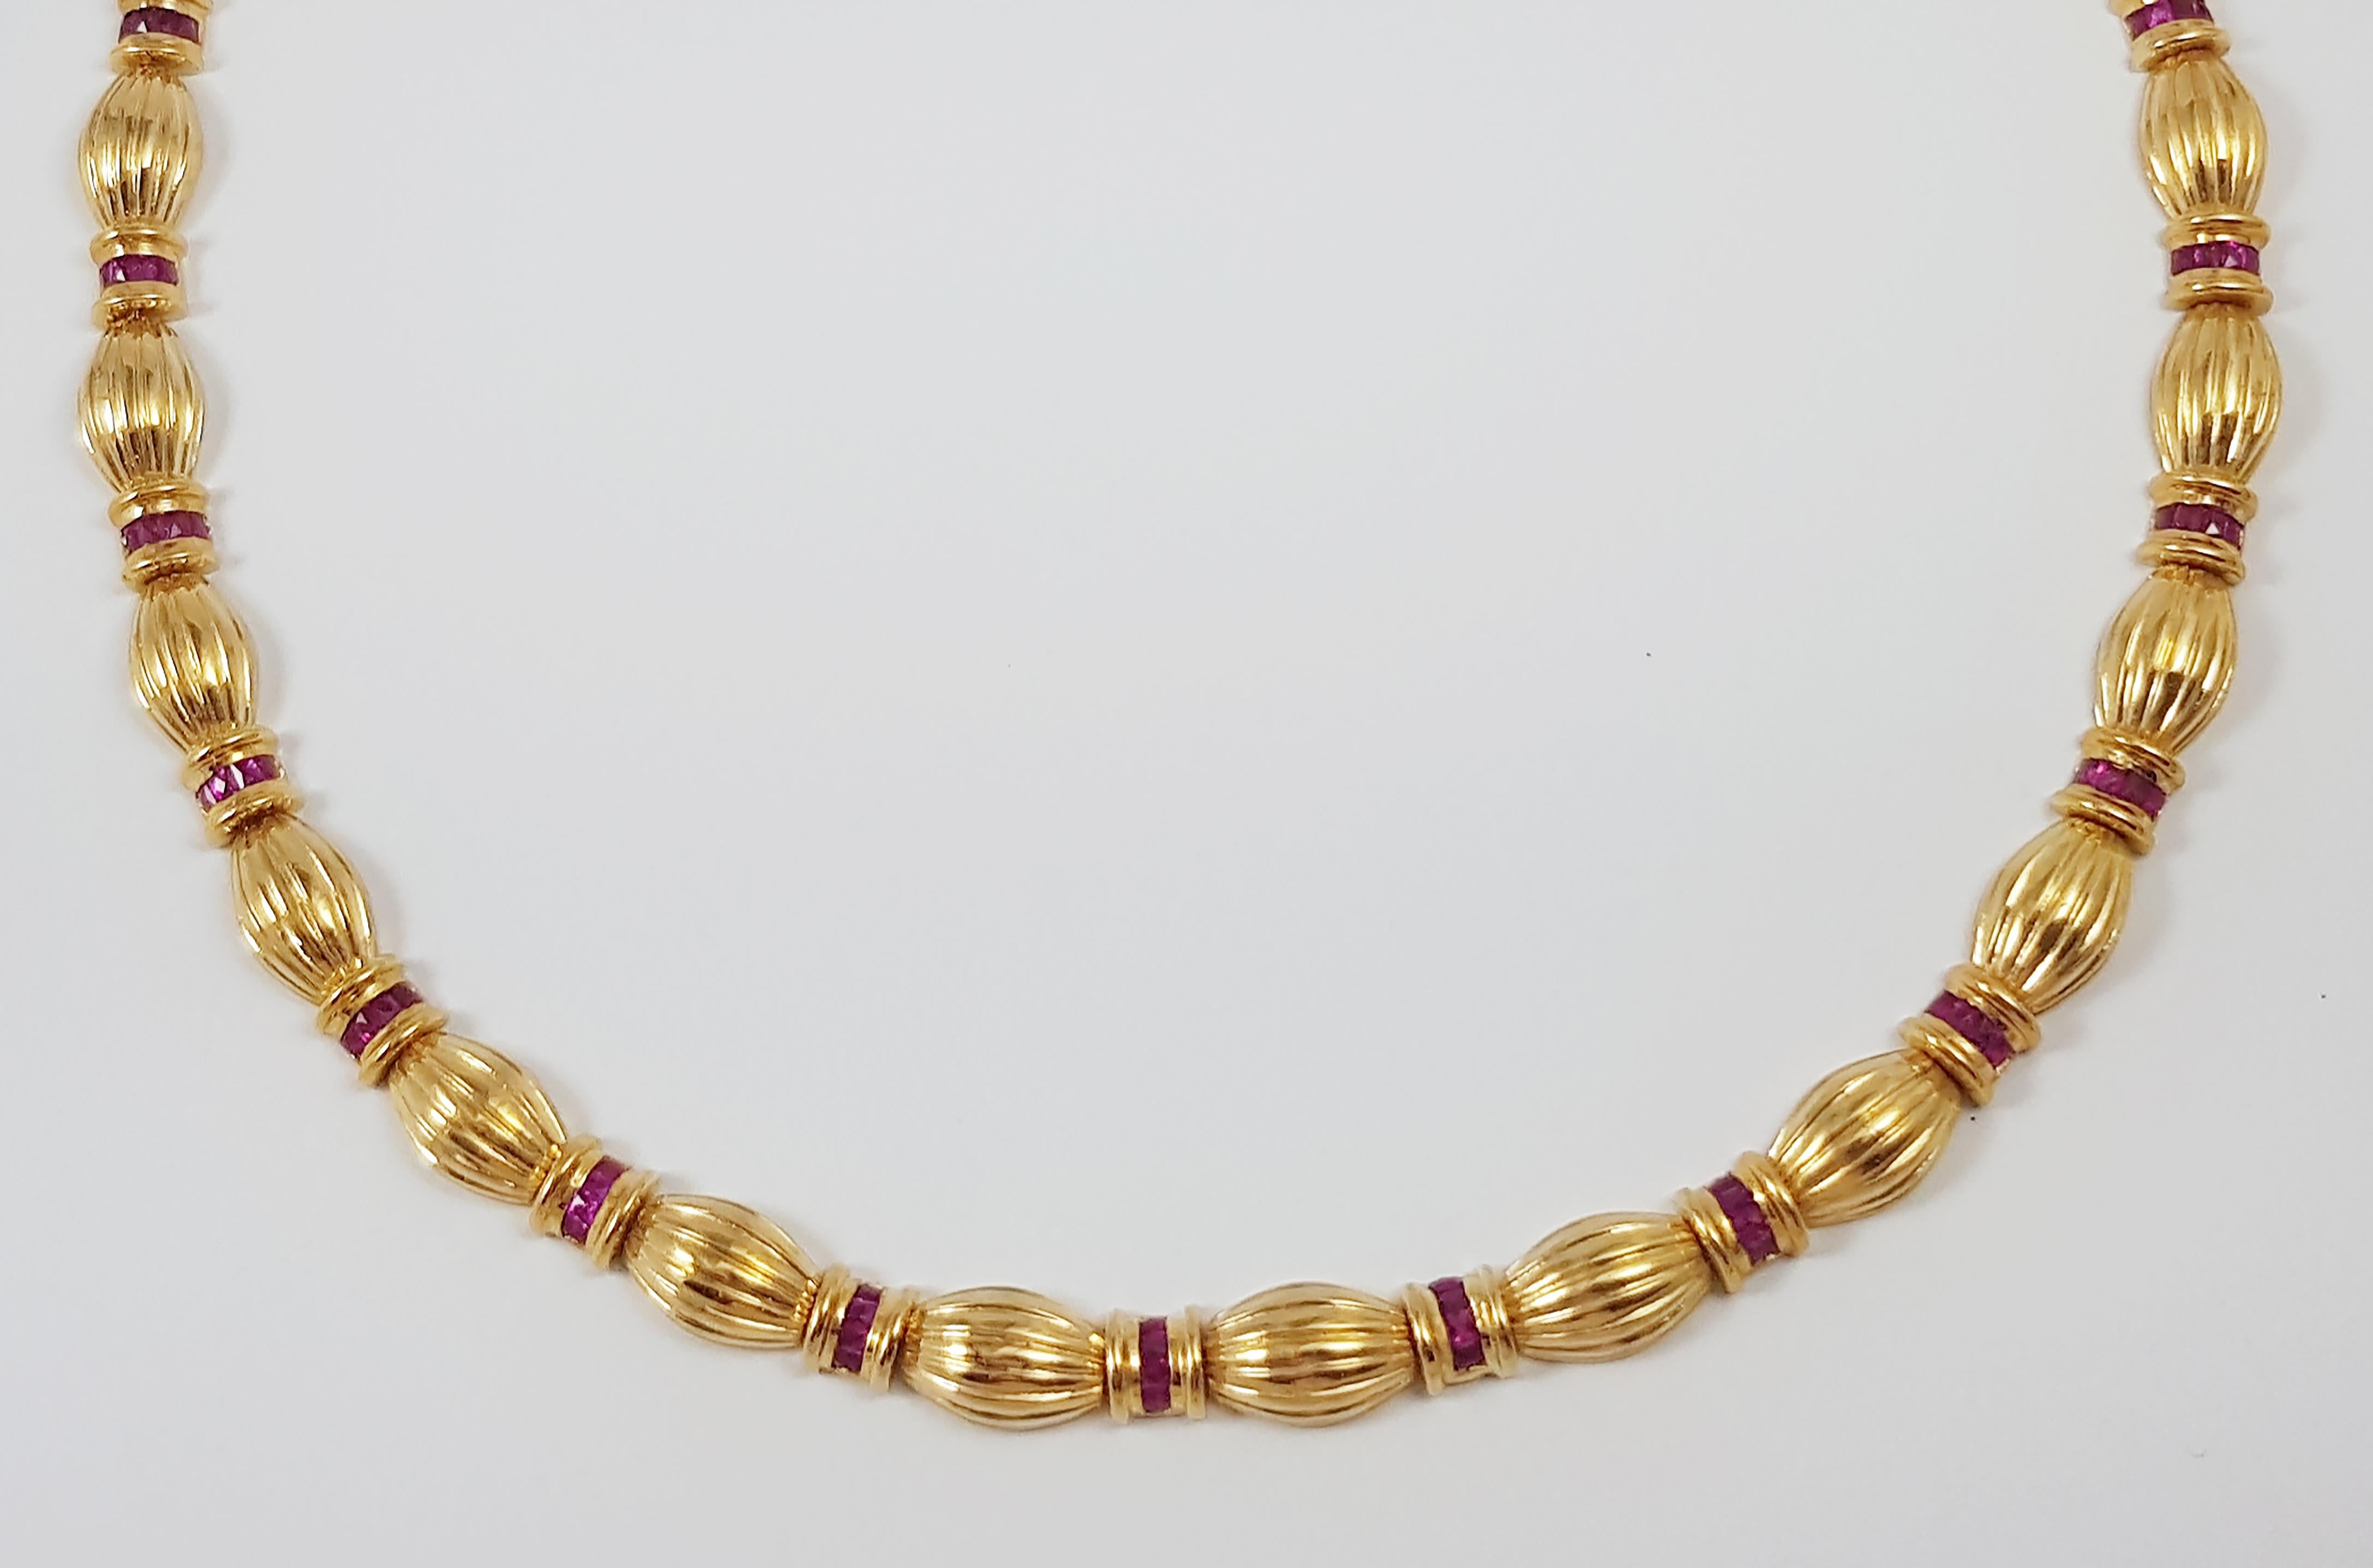 Rubin 6,36 Karat Halskette in 18 Karat Goldfassung

Breite:  0.7 cm 
Länge: 42,0 cm
Gesamtgewicht: 53,04 Gramm

